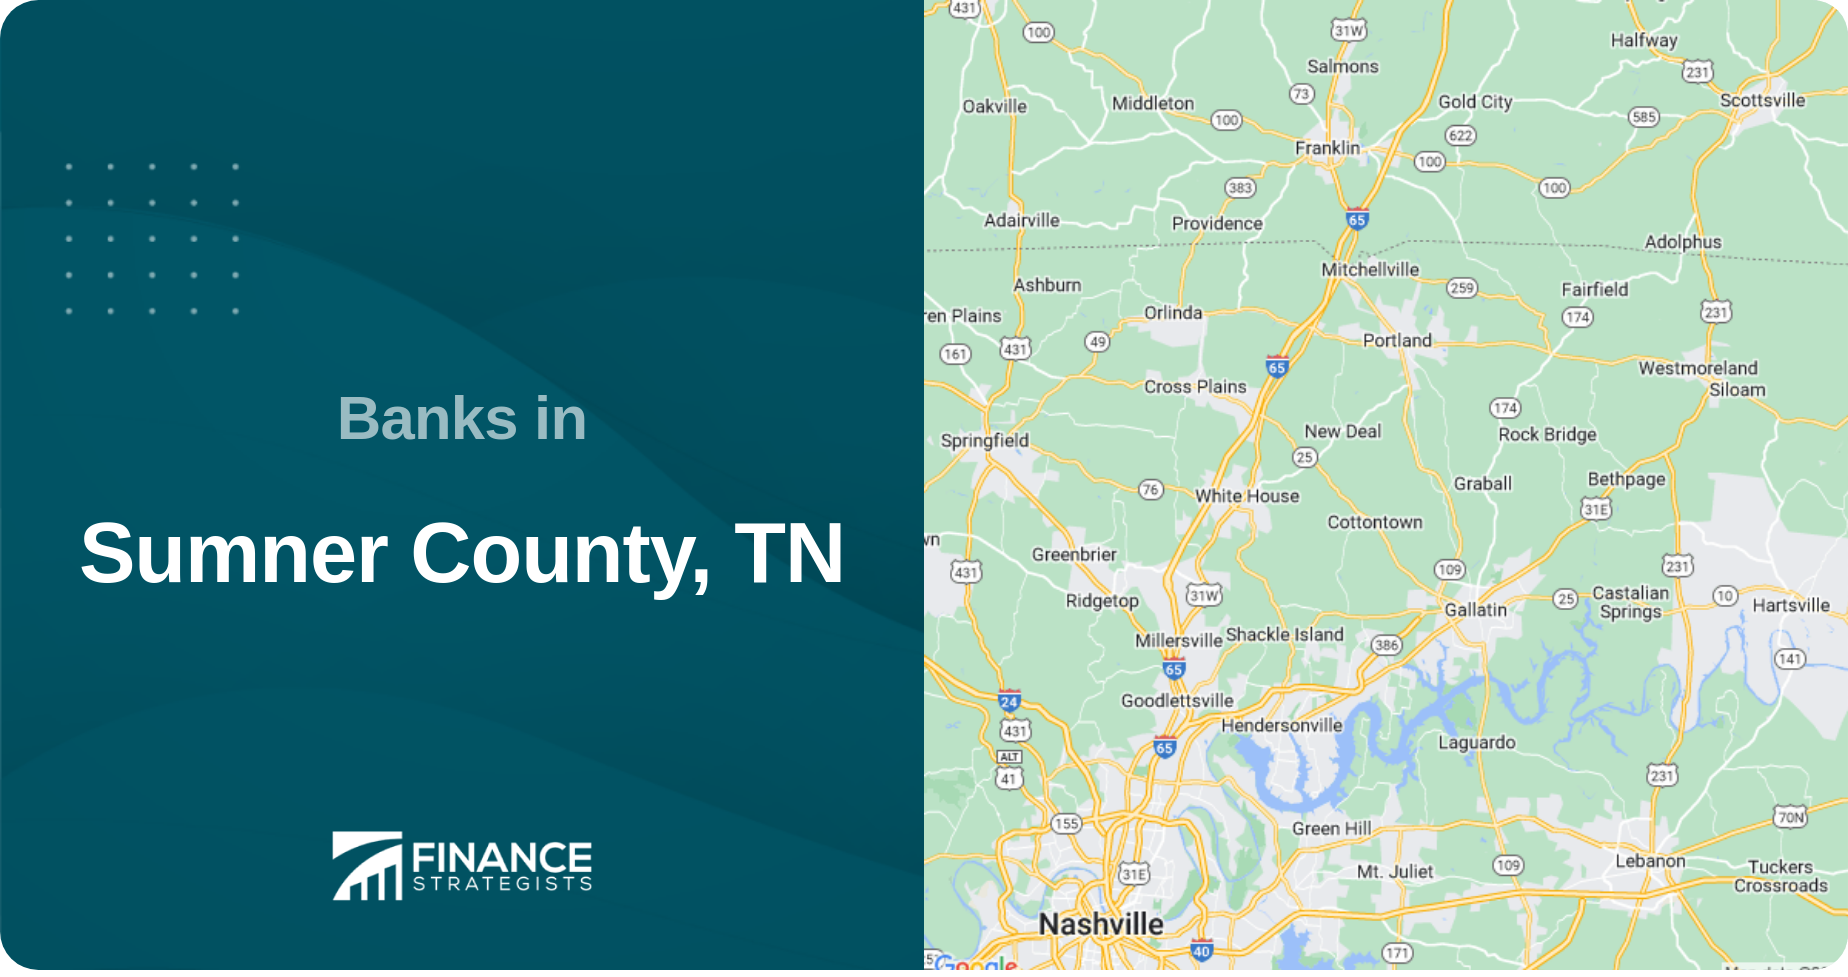 Banks in Sumner County, TN